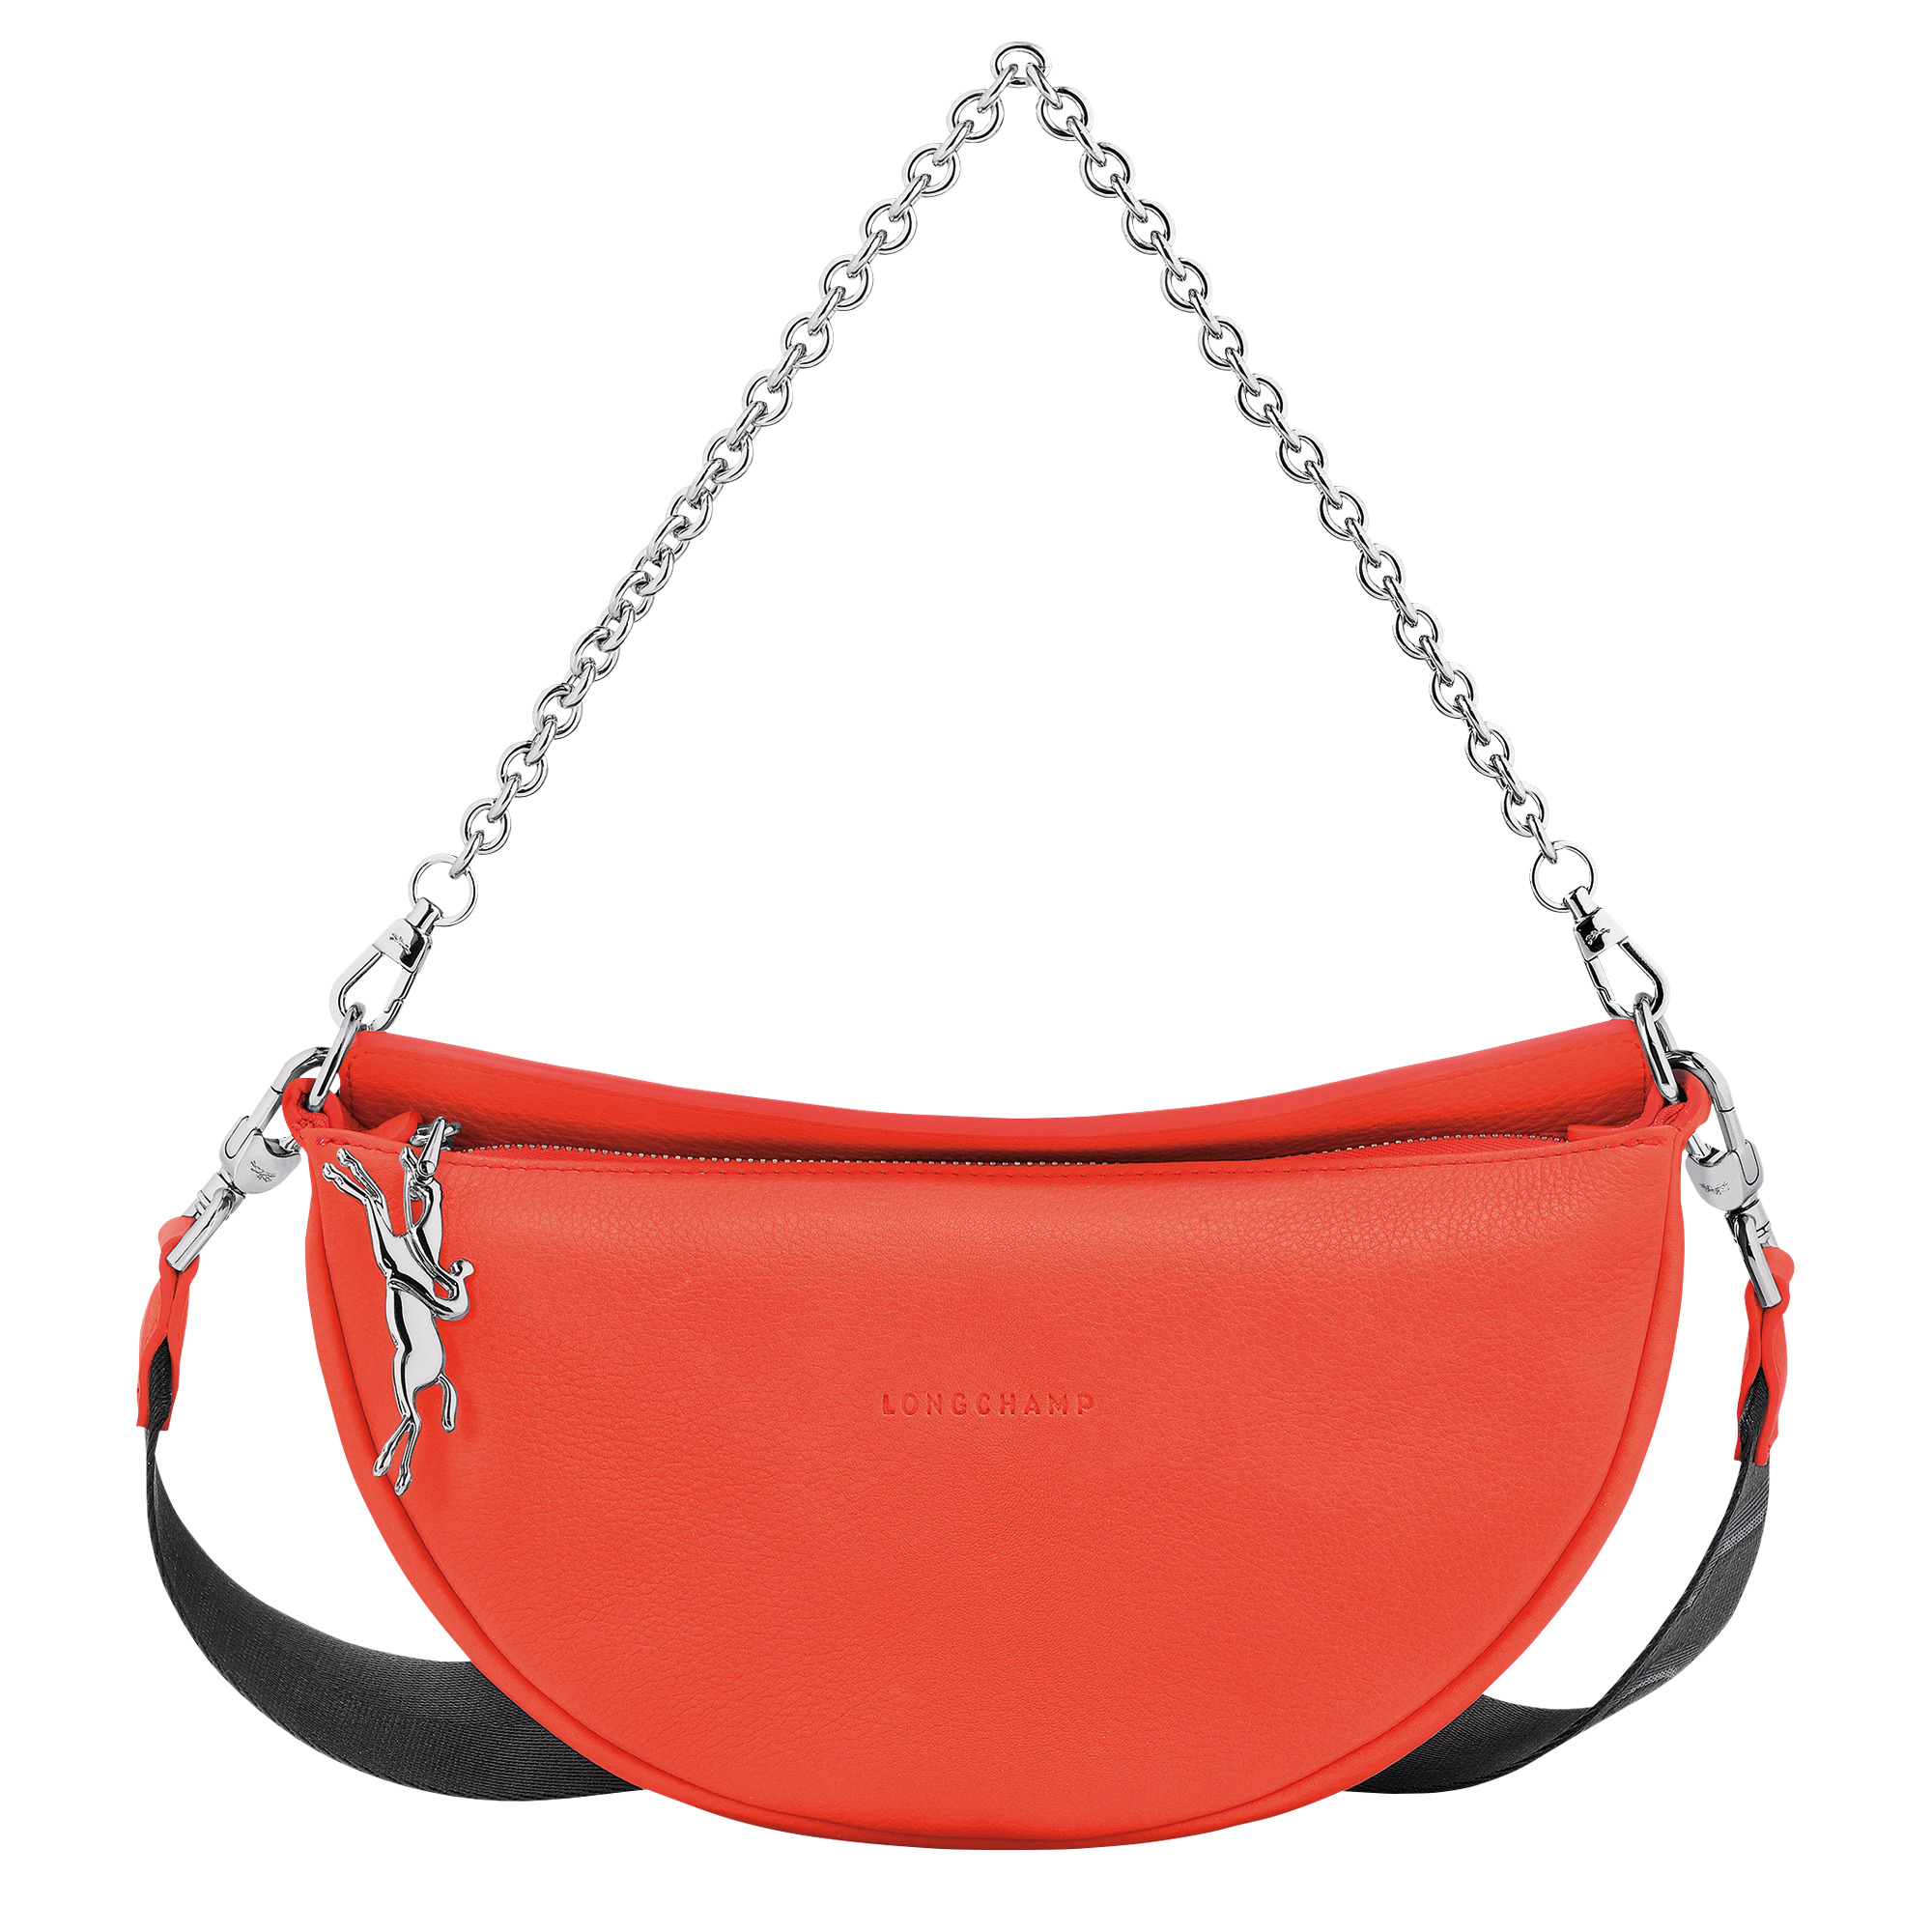 Longchamp Le Pliage City Pouch - Red Handle Bags, Handbags